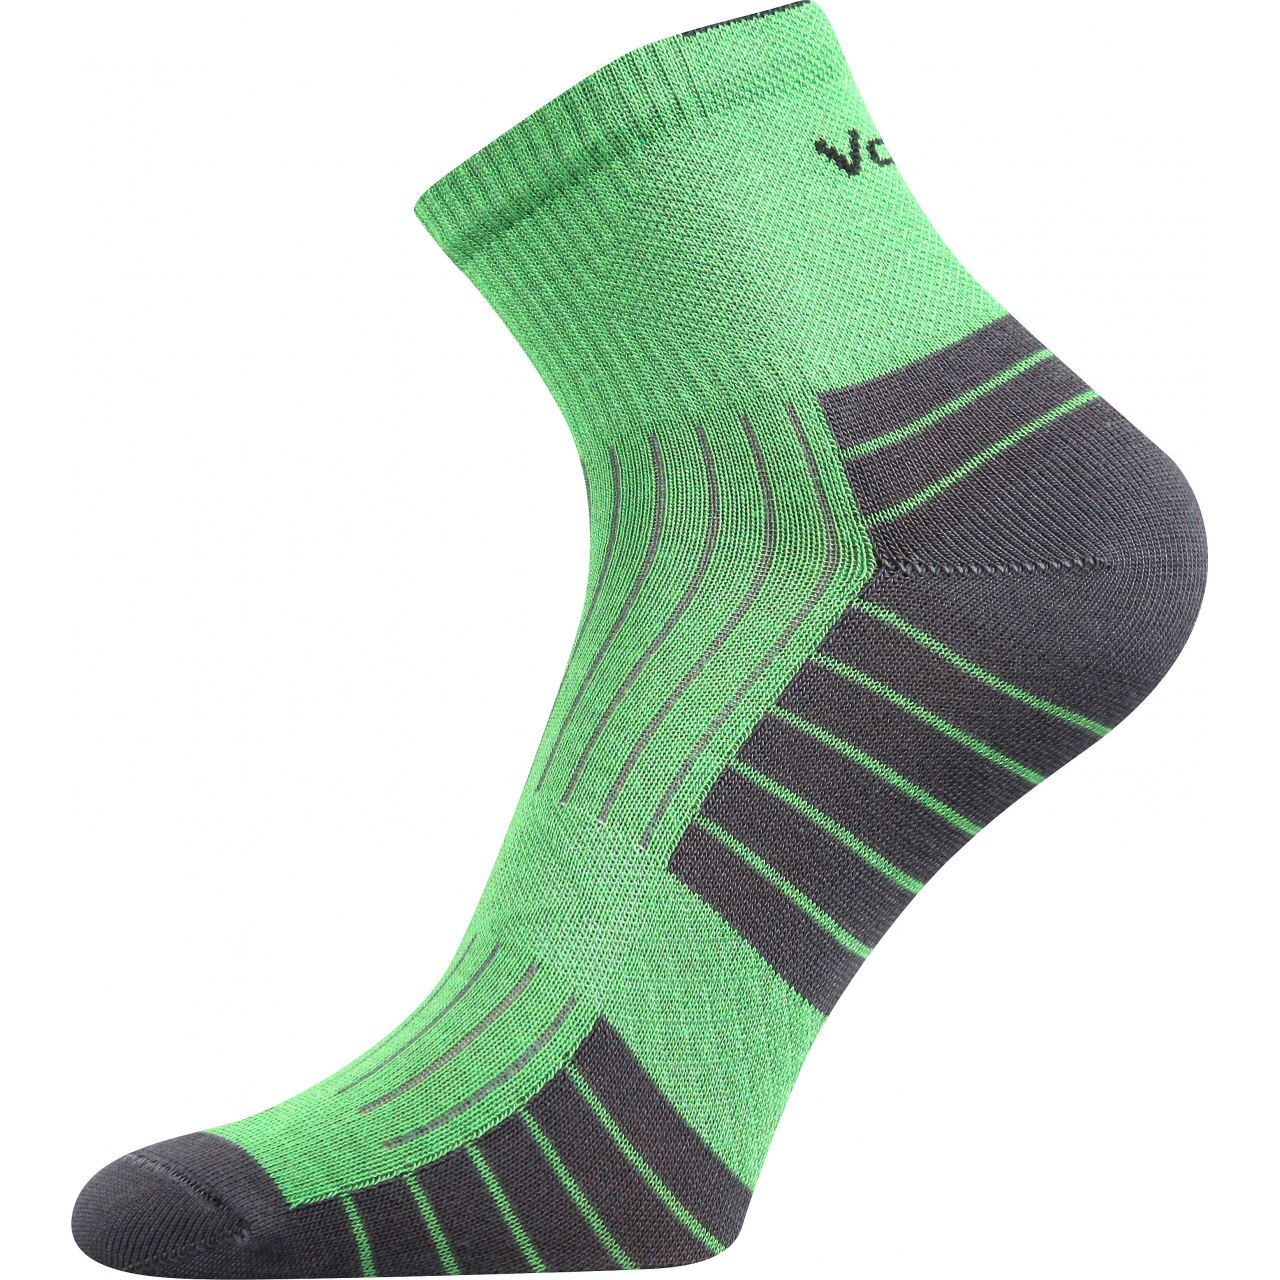 Ponožky bambusové unisex Voxx Belkin - zelené-šedé, 43-46